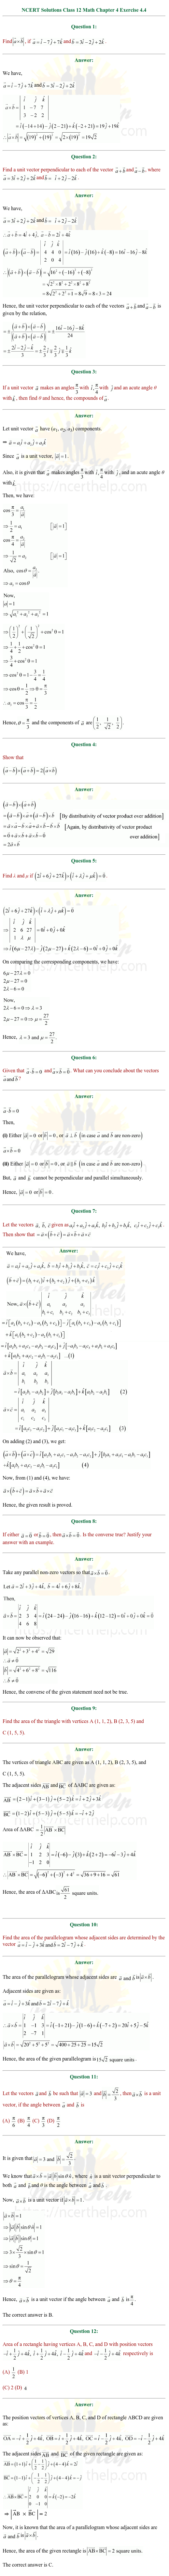 ex.10.4 Class 12 Math Chapter 10 ncert solutions